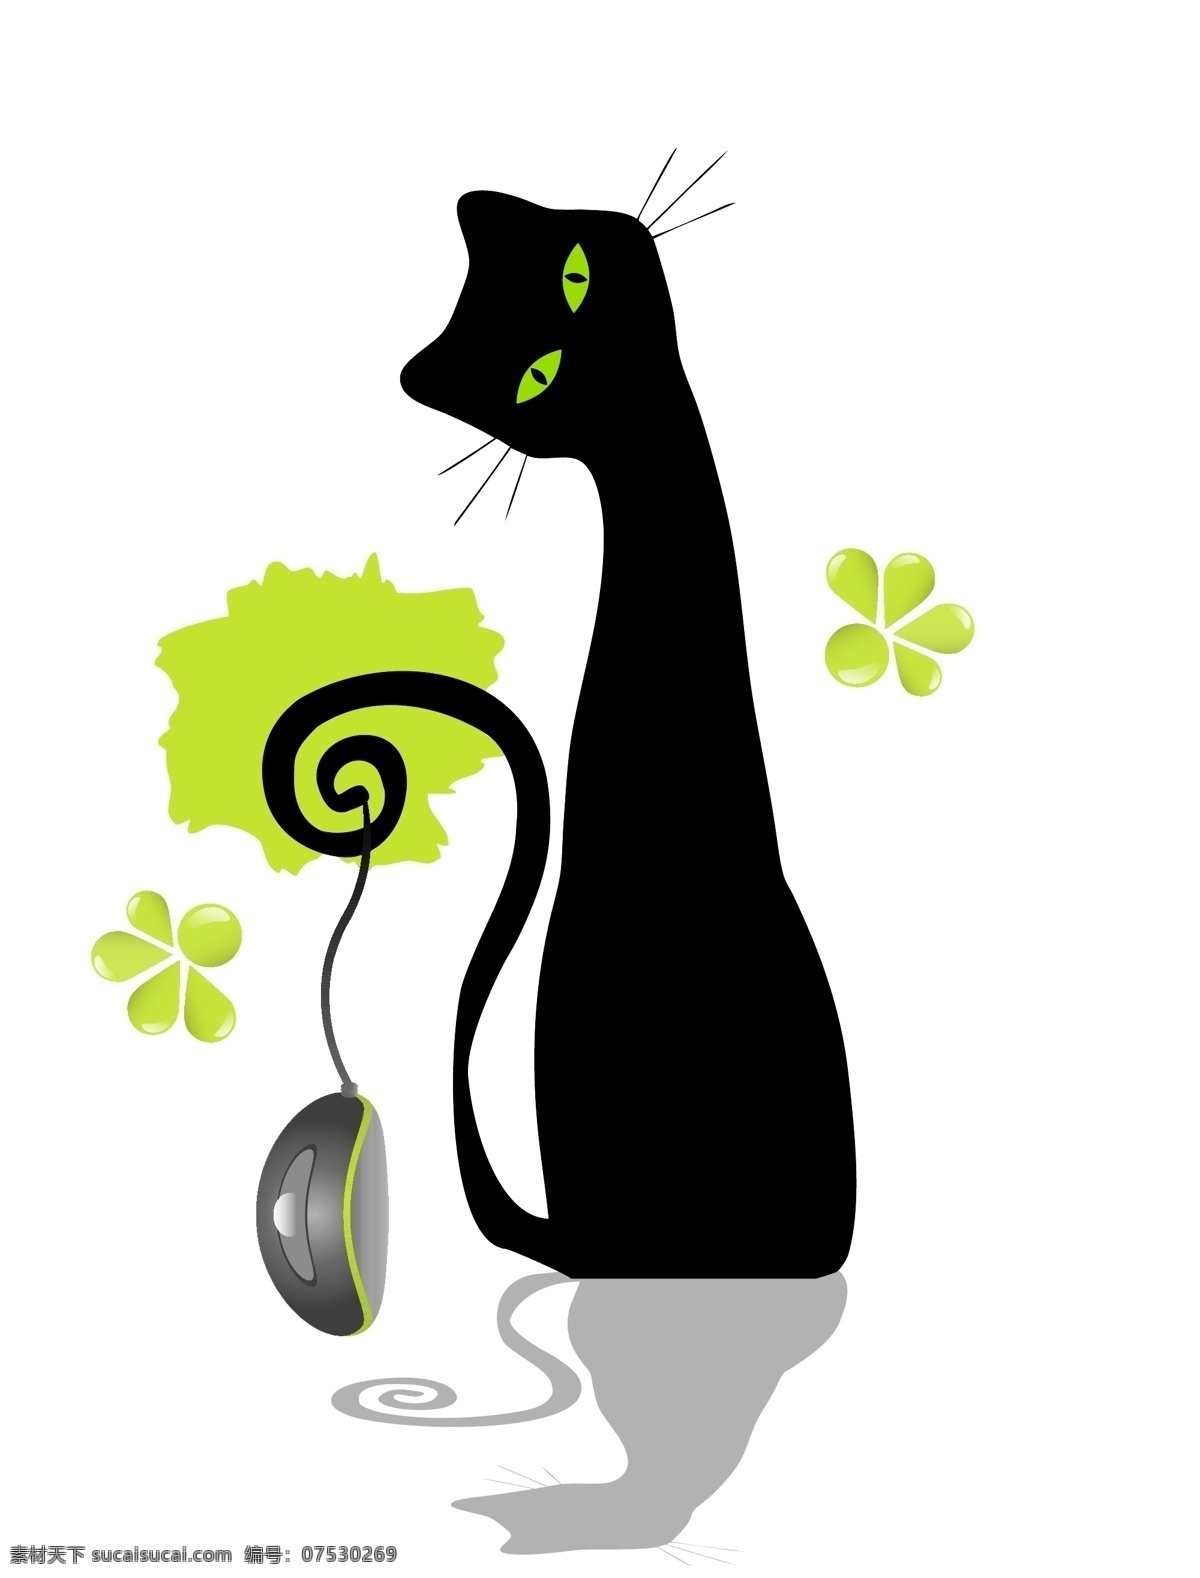 优雅的猫 卡通 动物 可爱 卡通生物 黑猫 优雅 鼠标 陆地动物 生物世界 矢量素材 白色